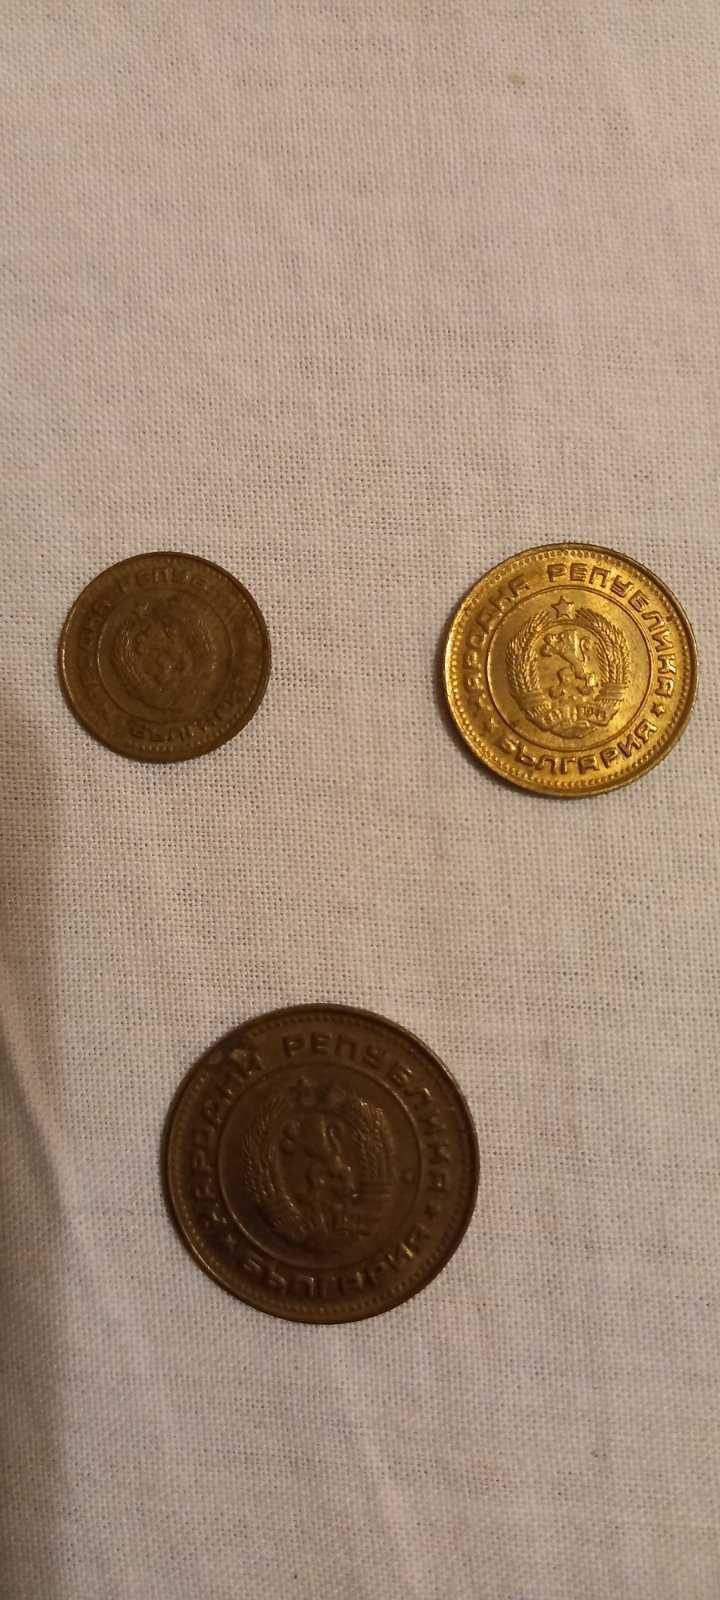 Български монети за нумизмати